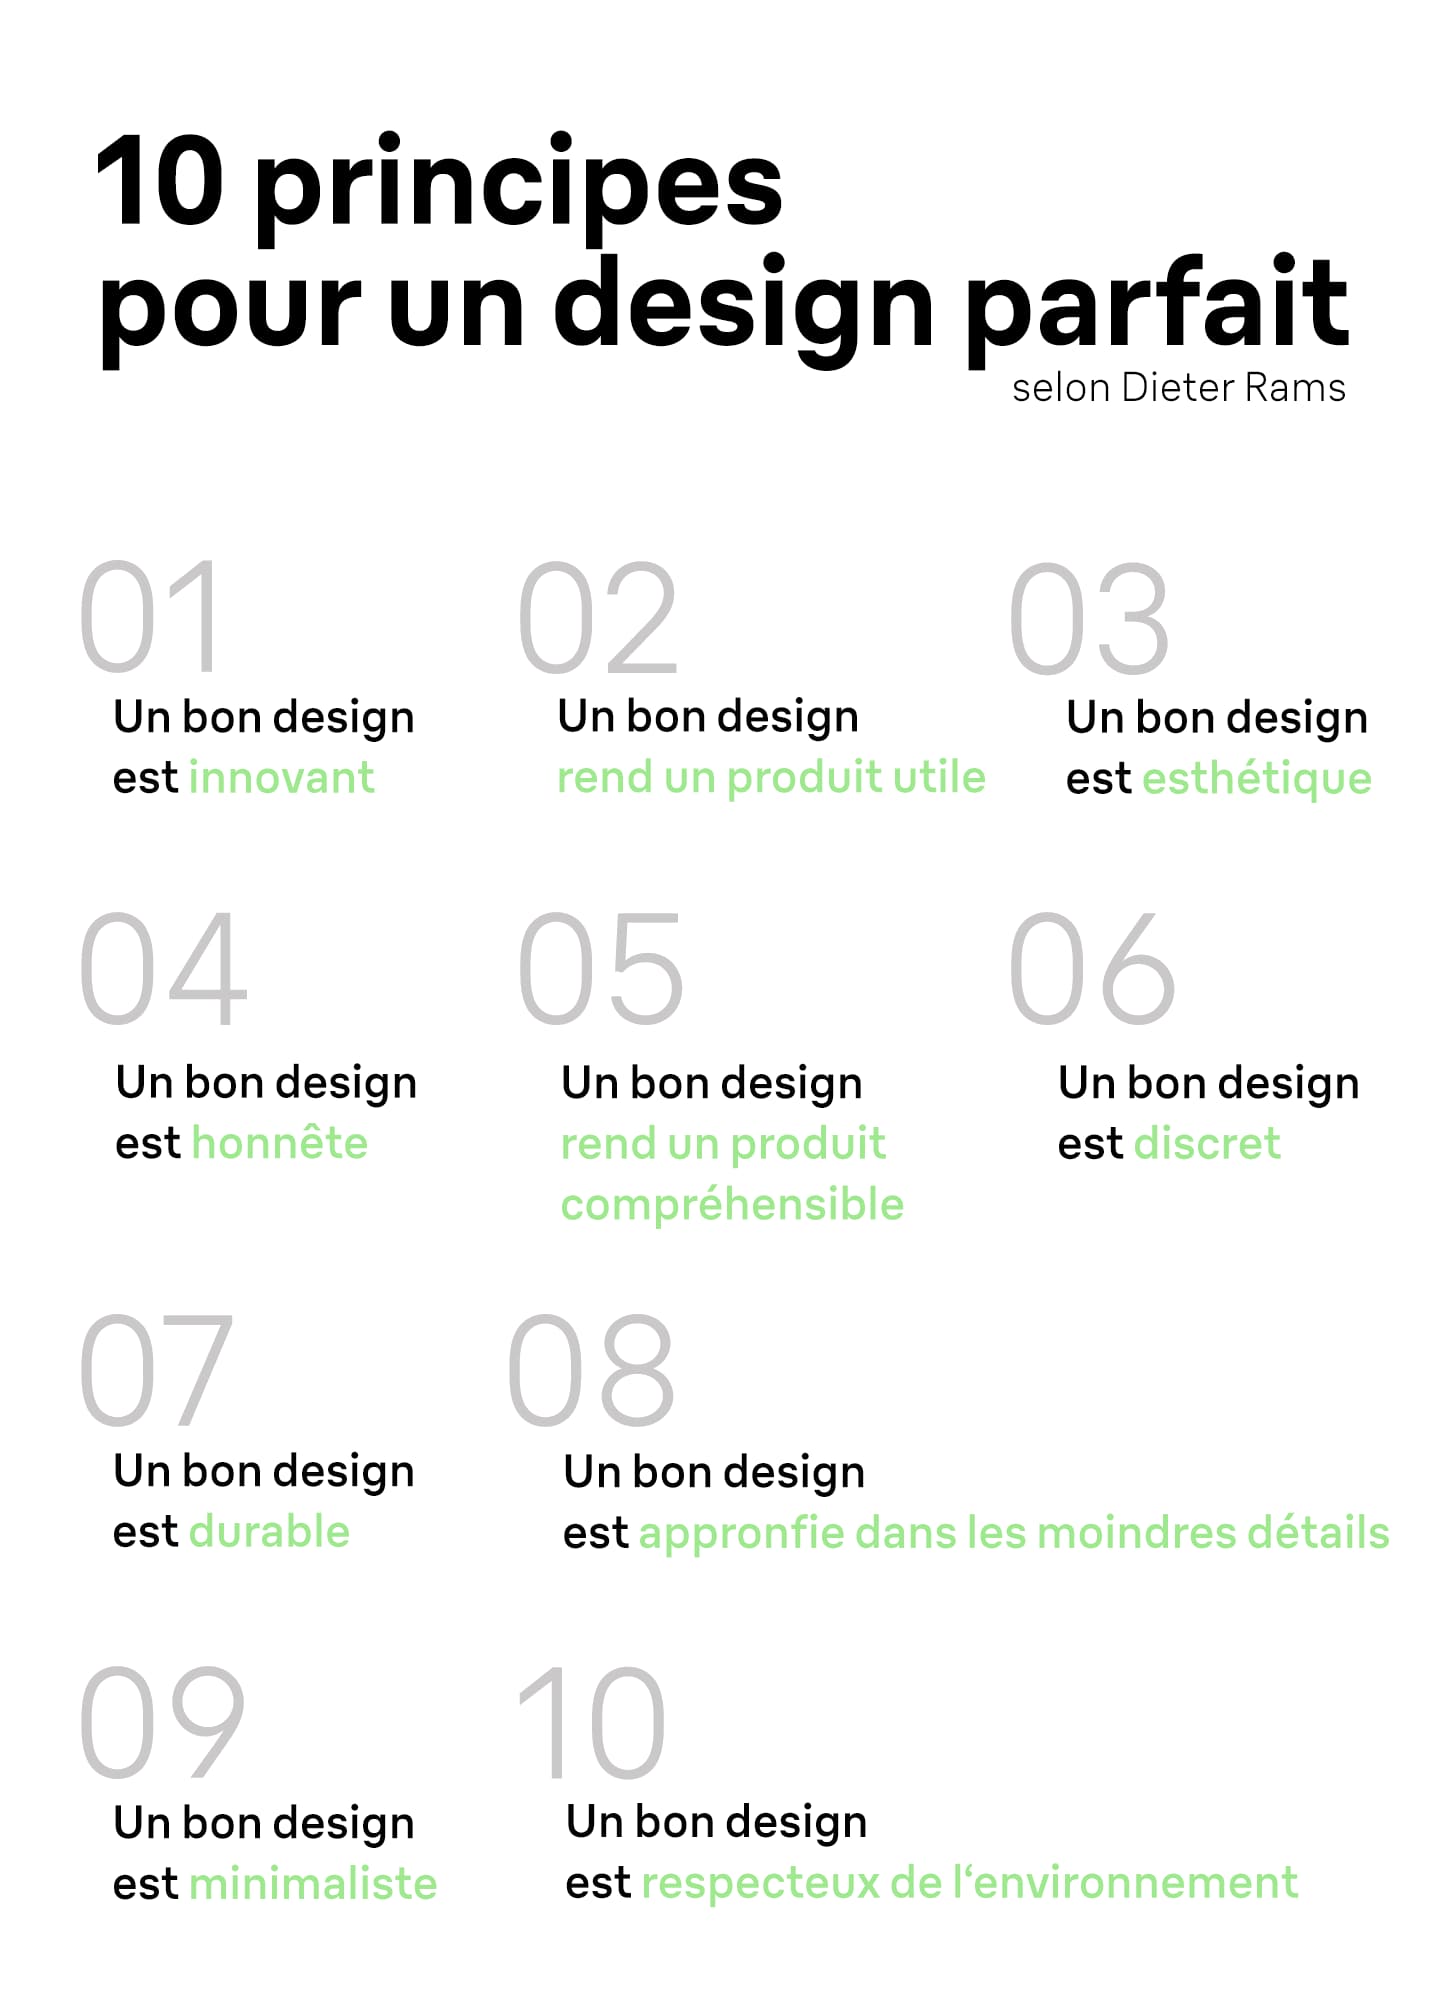 Les 10 principes pour un design parfait.png